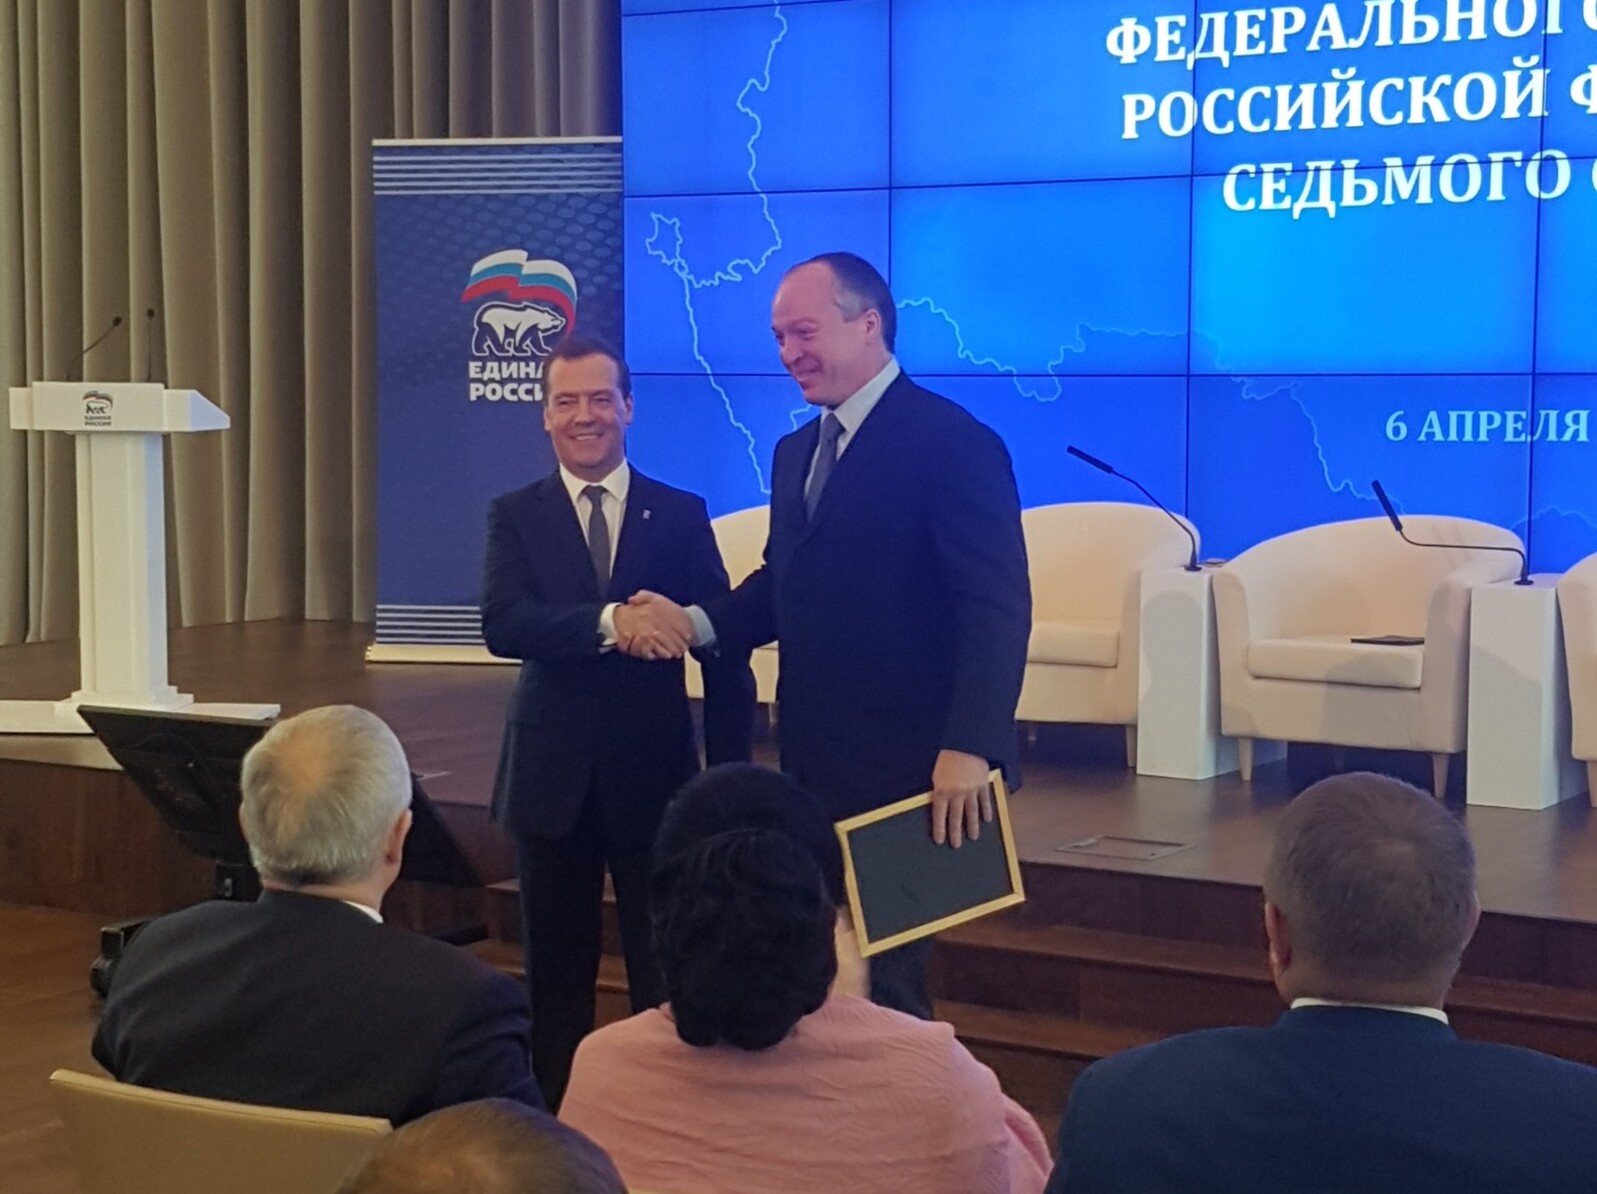 Дмитрий Медведев наградил белгородского депутата Госдумы Андрея Скоча